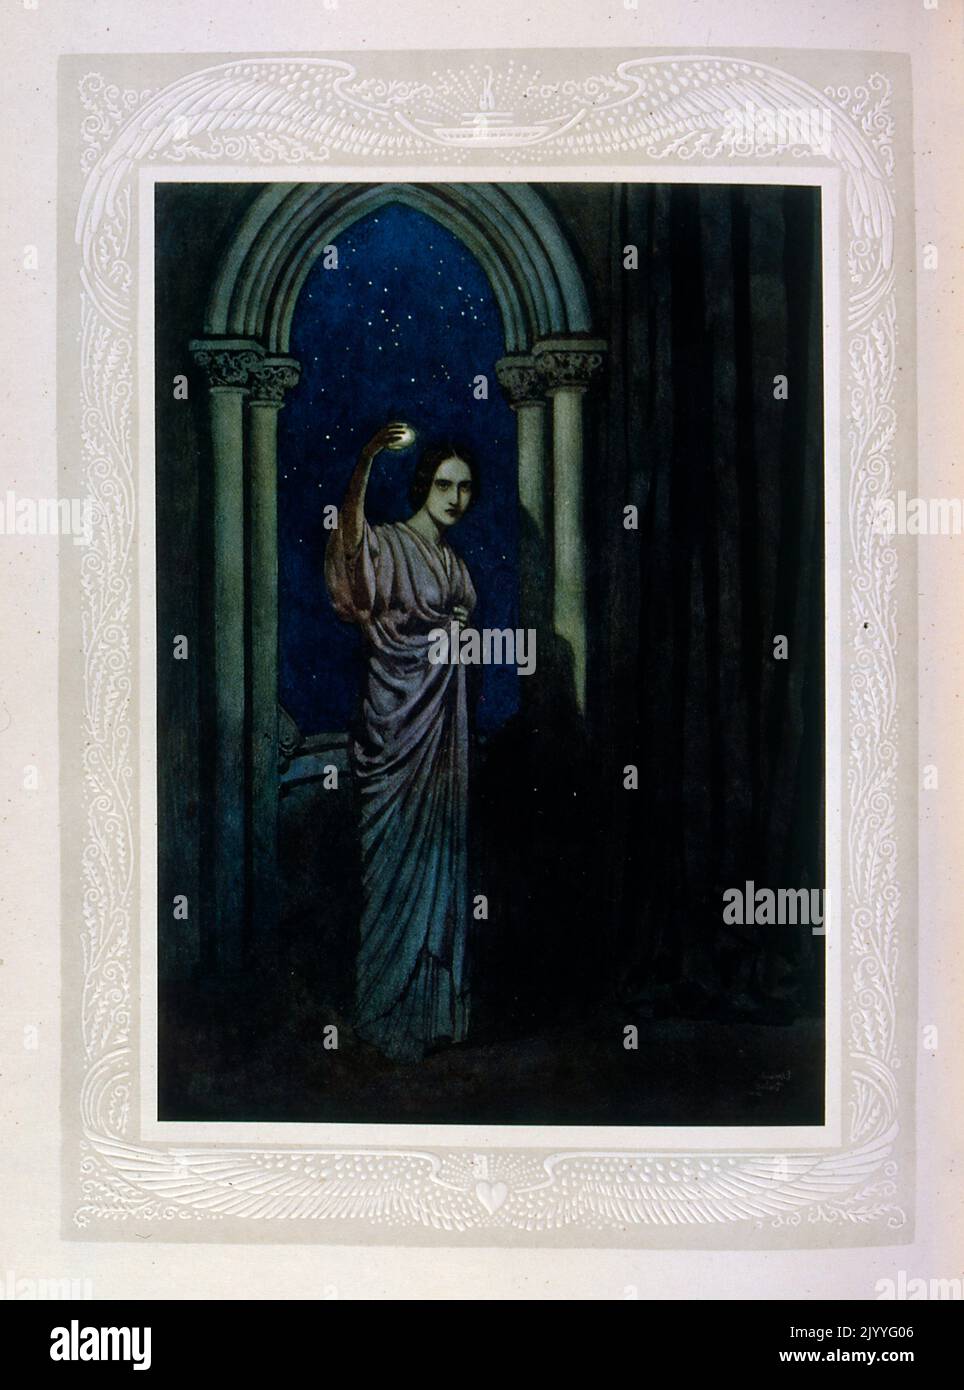 Farbige Illustration einer Dame, die einen beleuchteten Orbis an ein Bogenfenster hält. Illustriert von Edmund Dulac (1882-1953), einem französisch-britischen eingebürgerten Magazin und Buchillustrator. Stockfoto